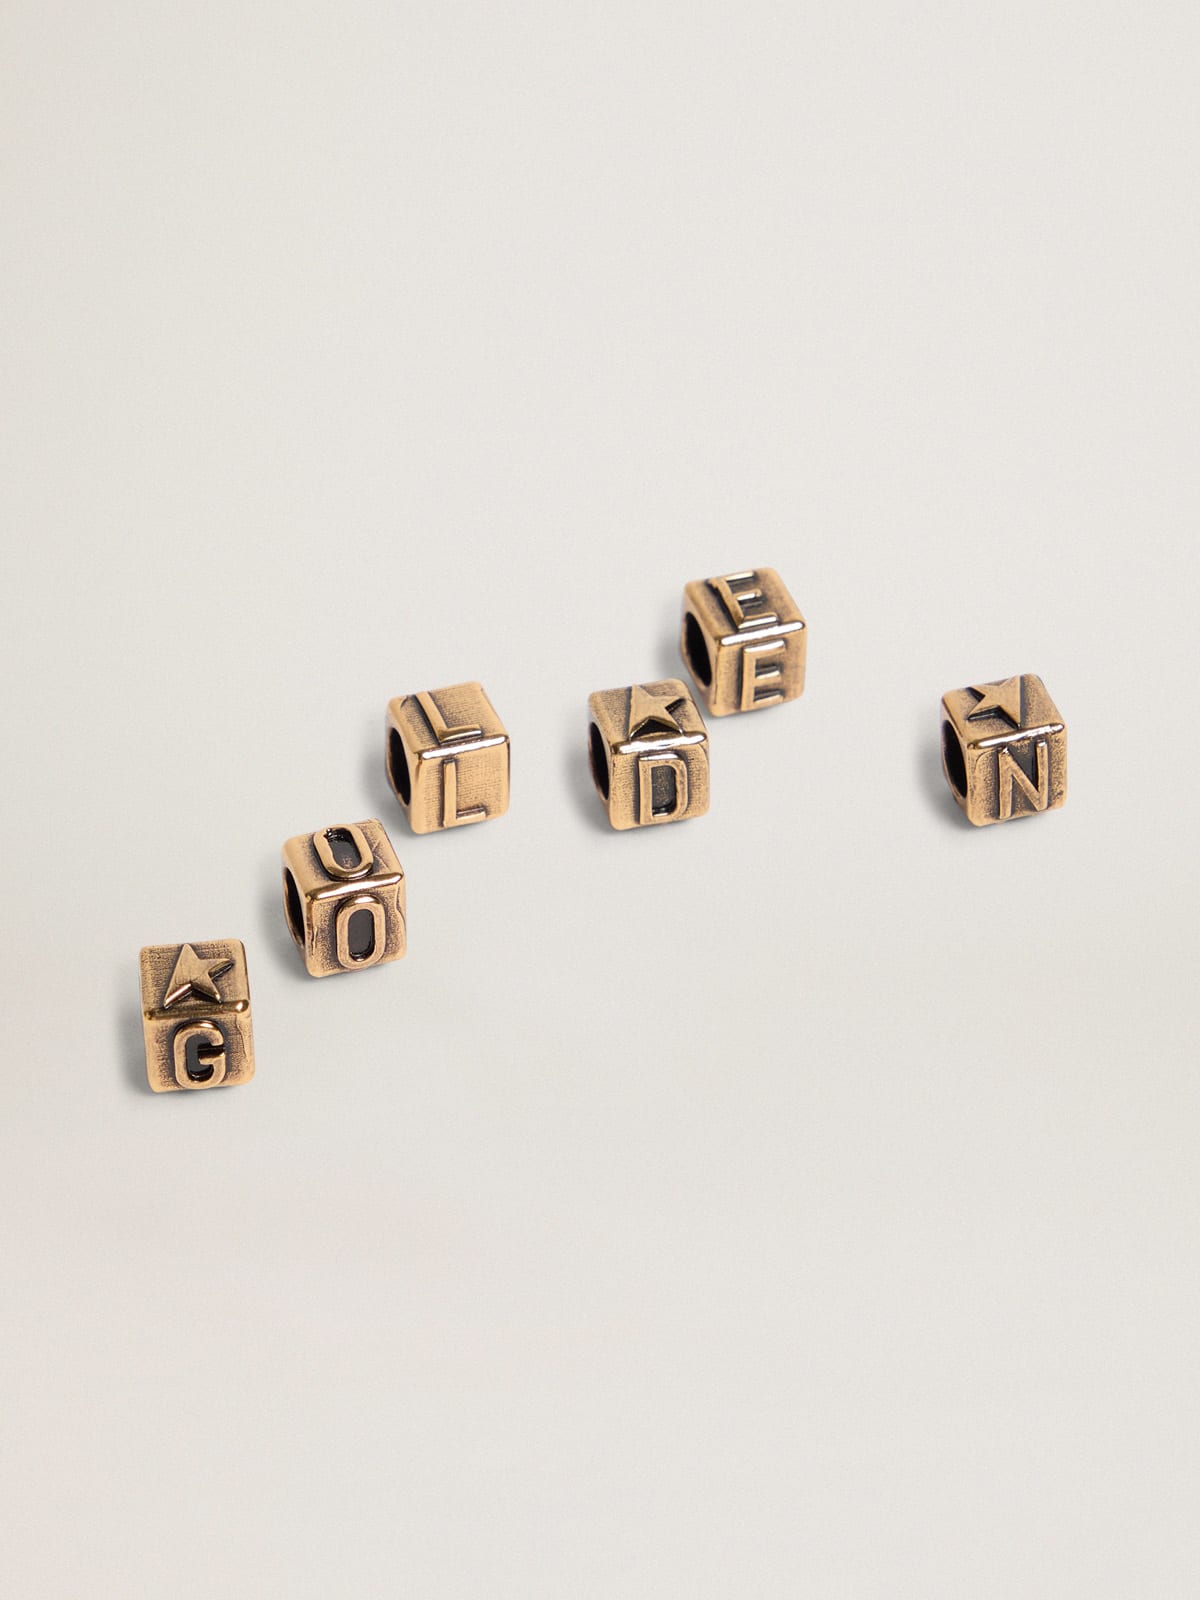 Golden Goose - Ciondoli cubici Messages Jewelmates Collection di colore oro antico con lettere dell'alfabeto in 